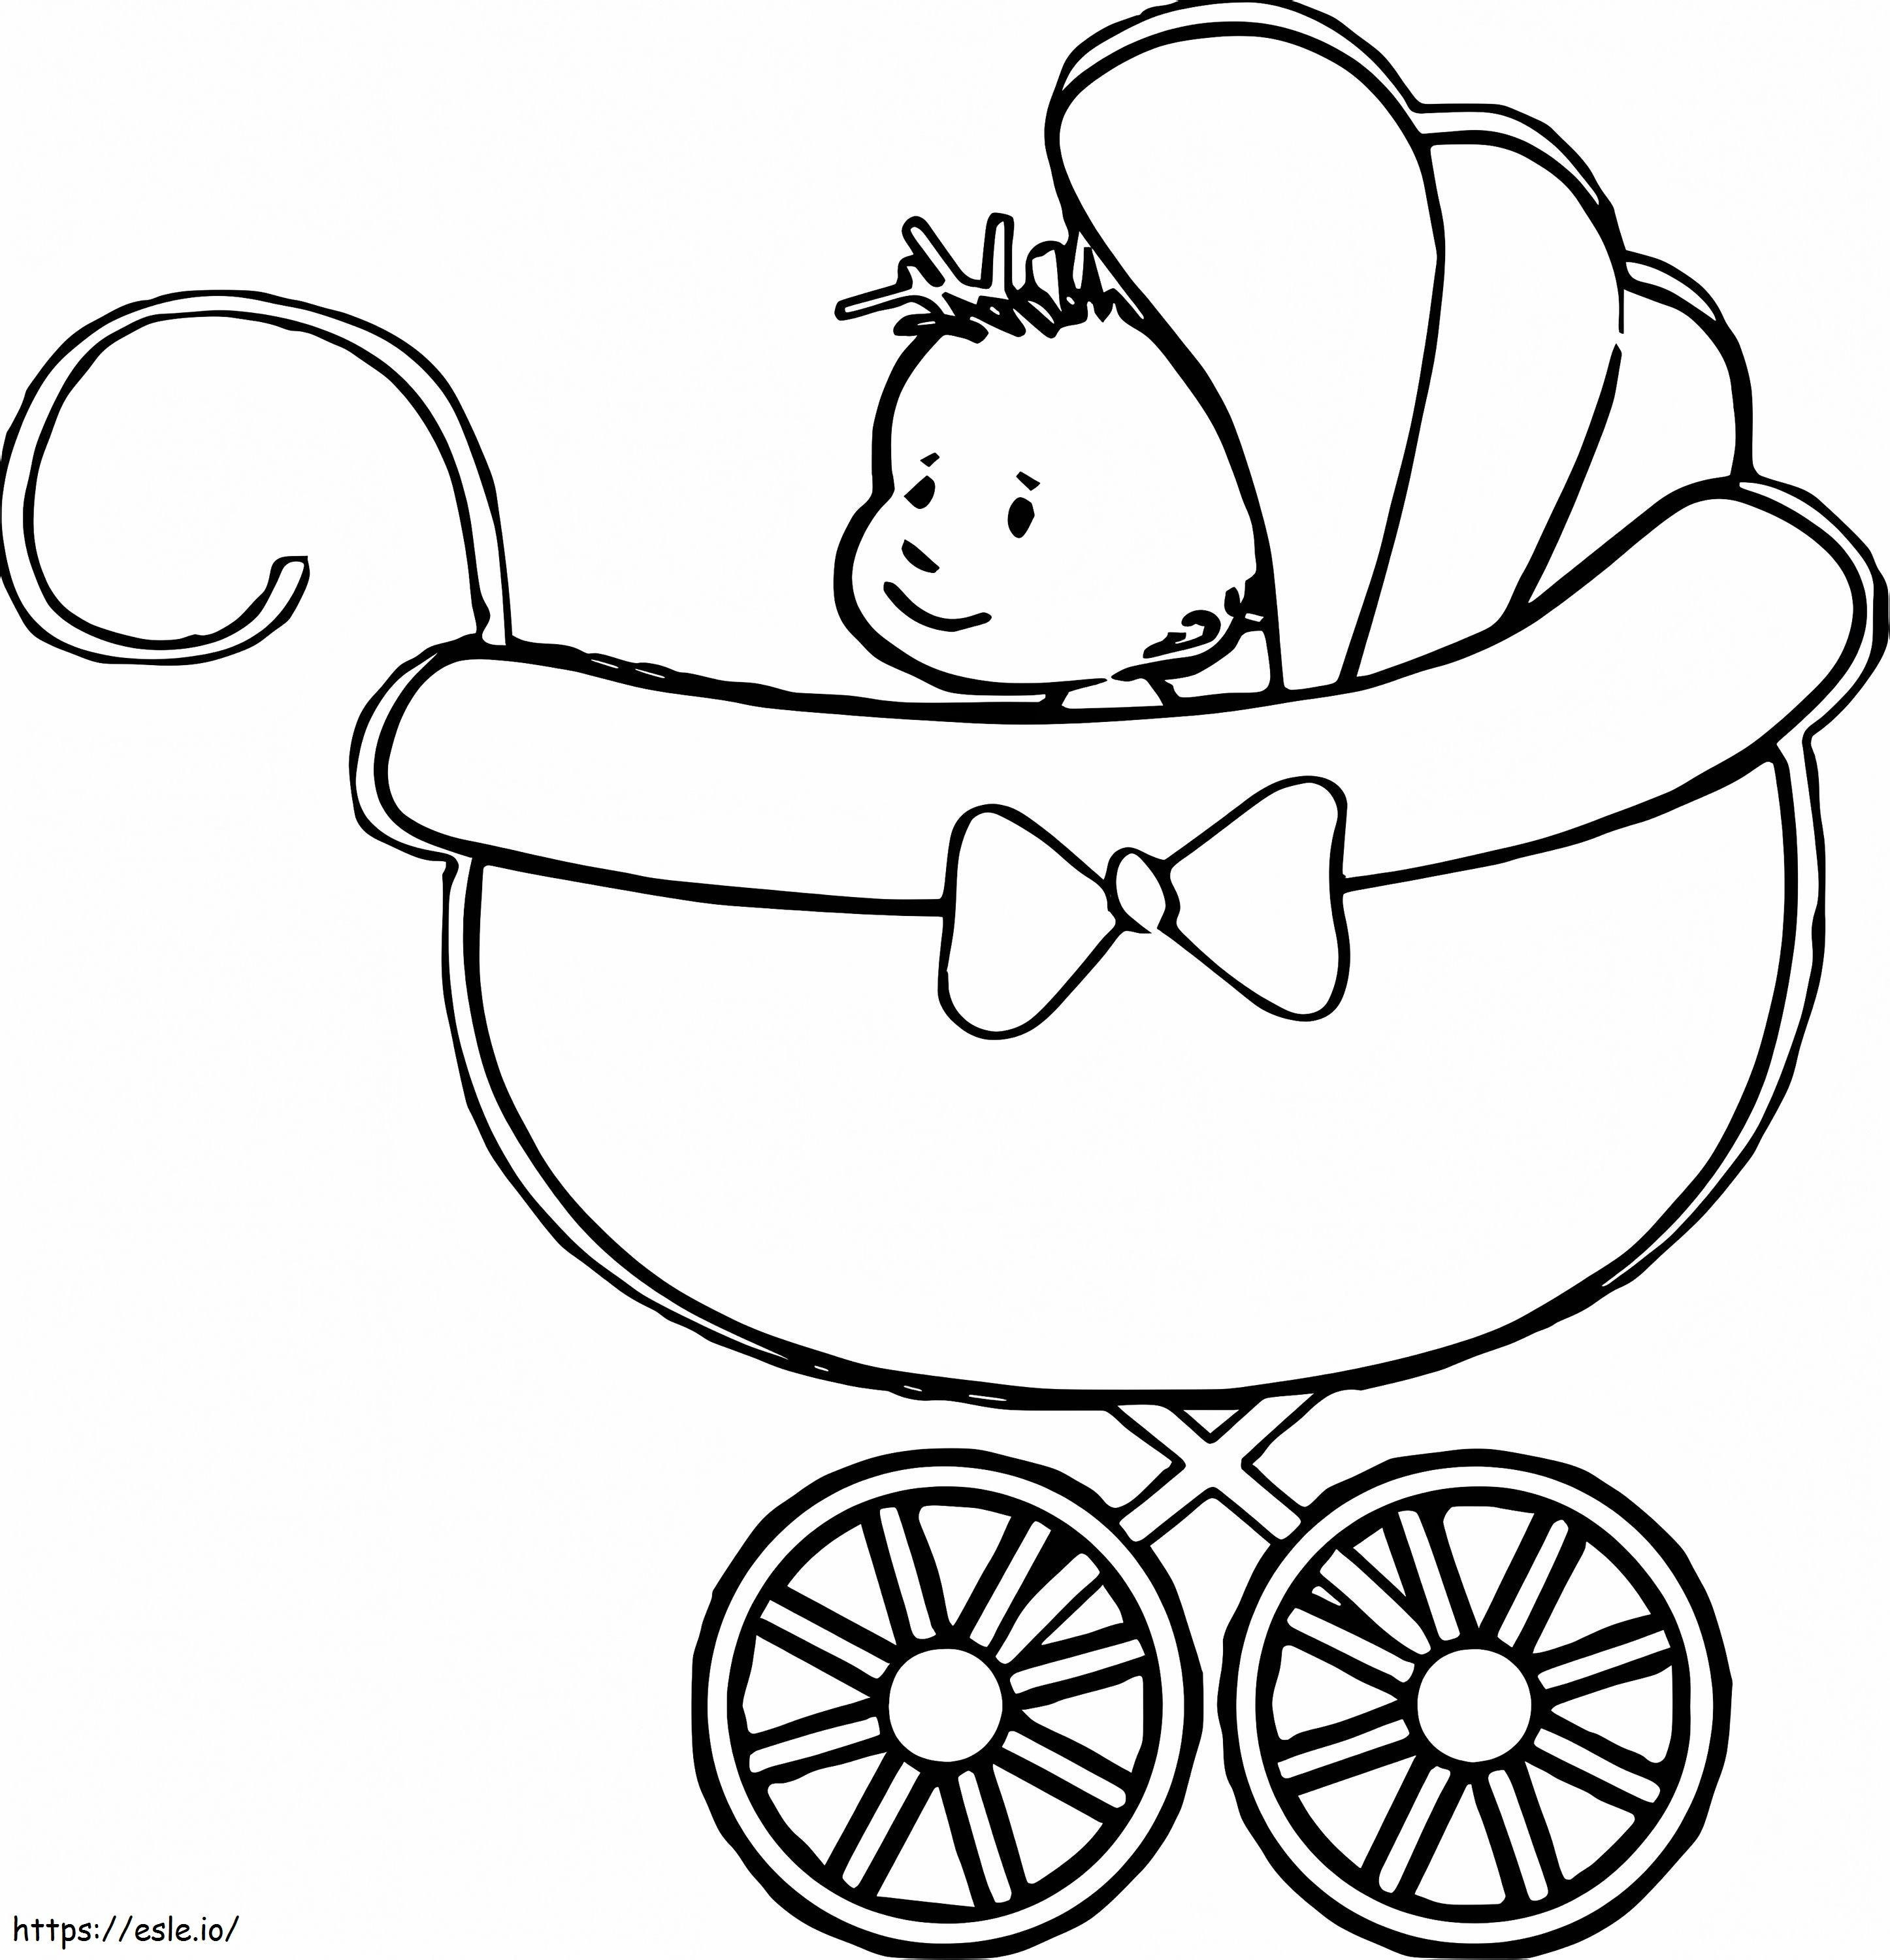 Malvorlagen für Babykinderwagen G8Oa2Hgs ausmalbilder